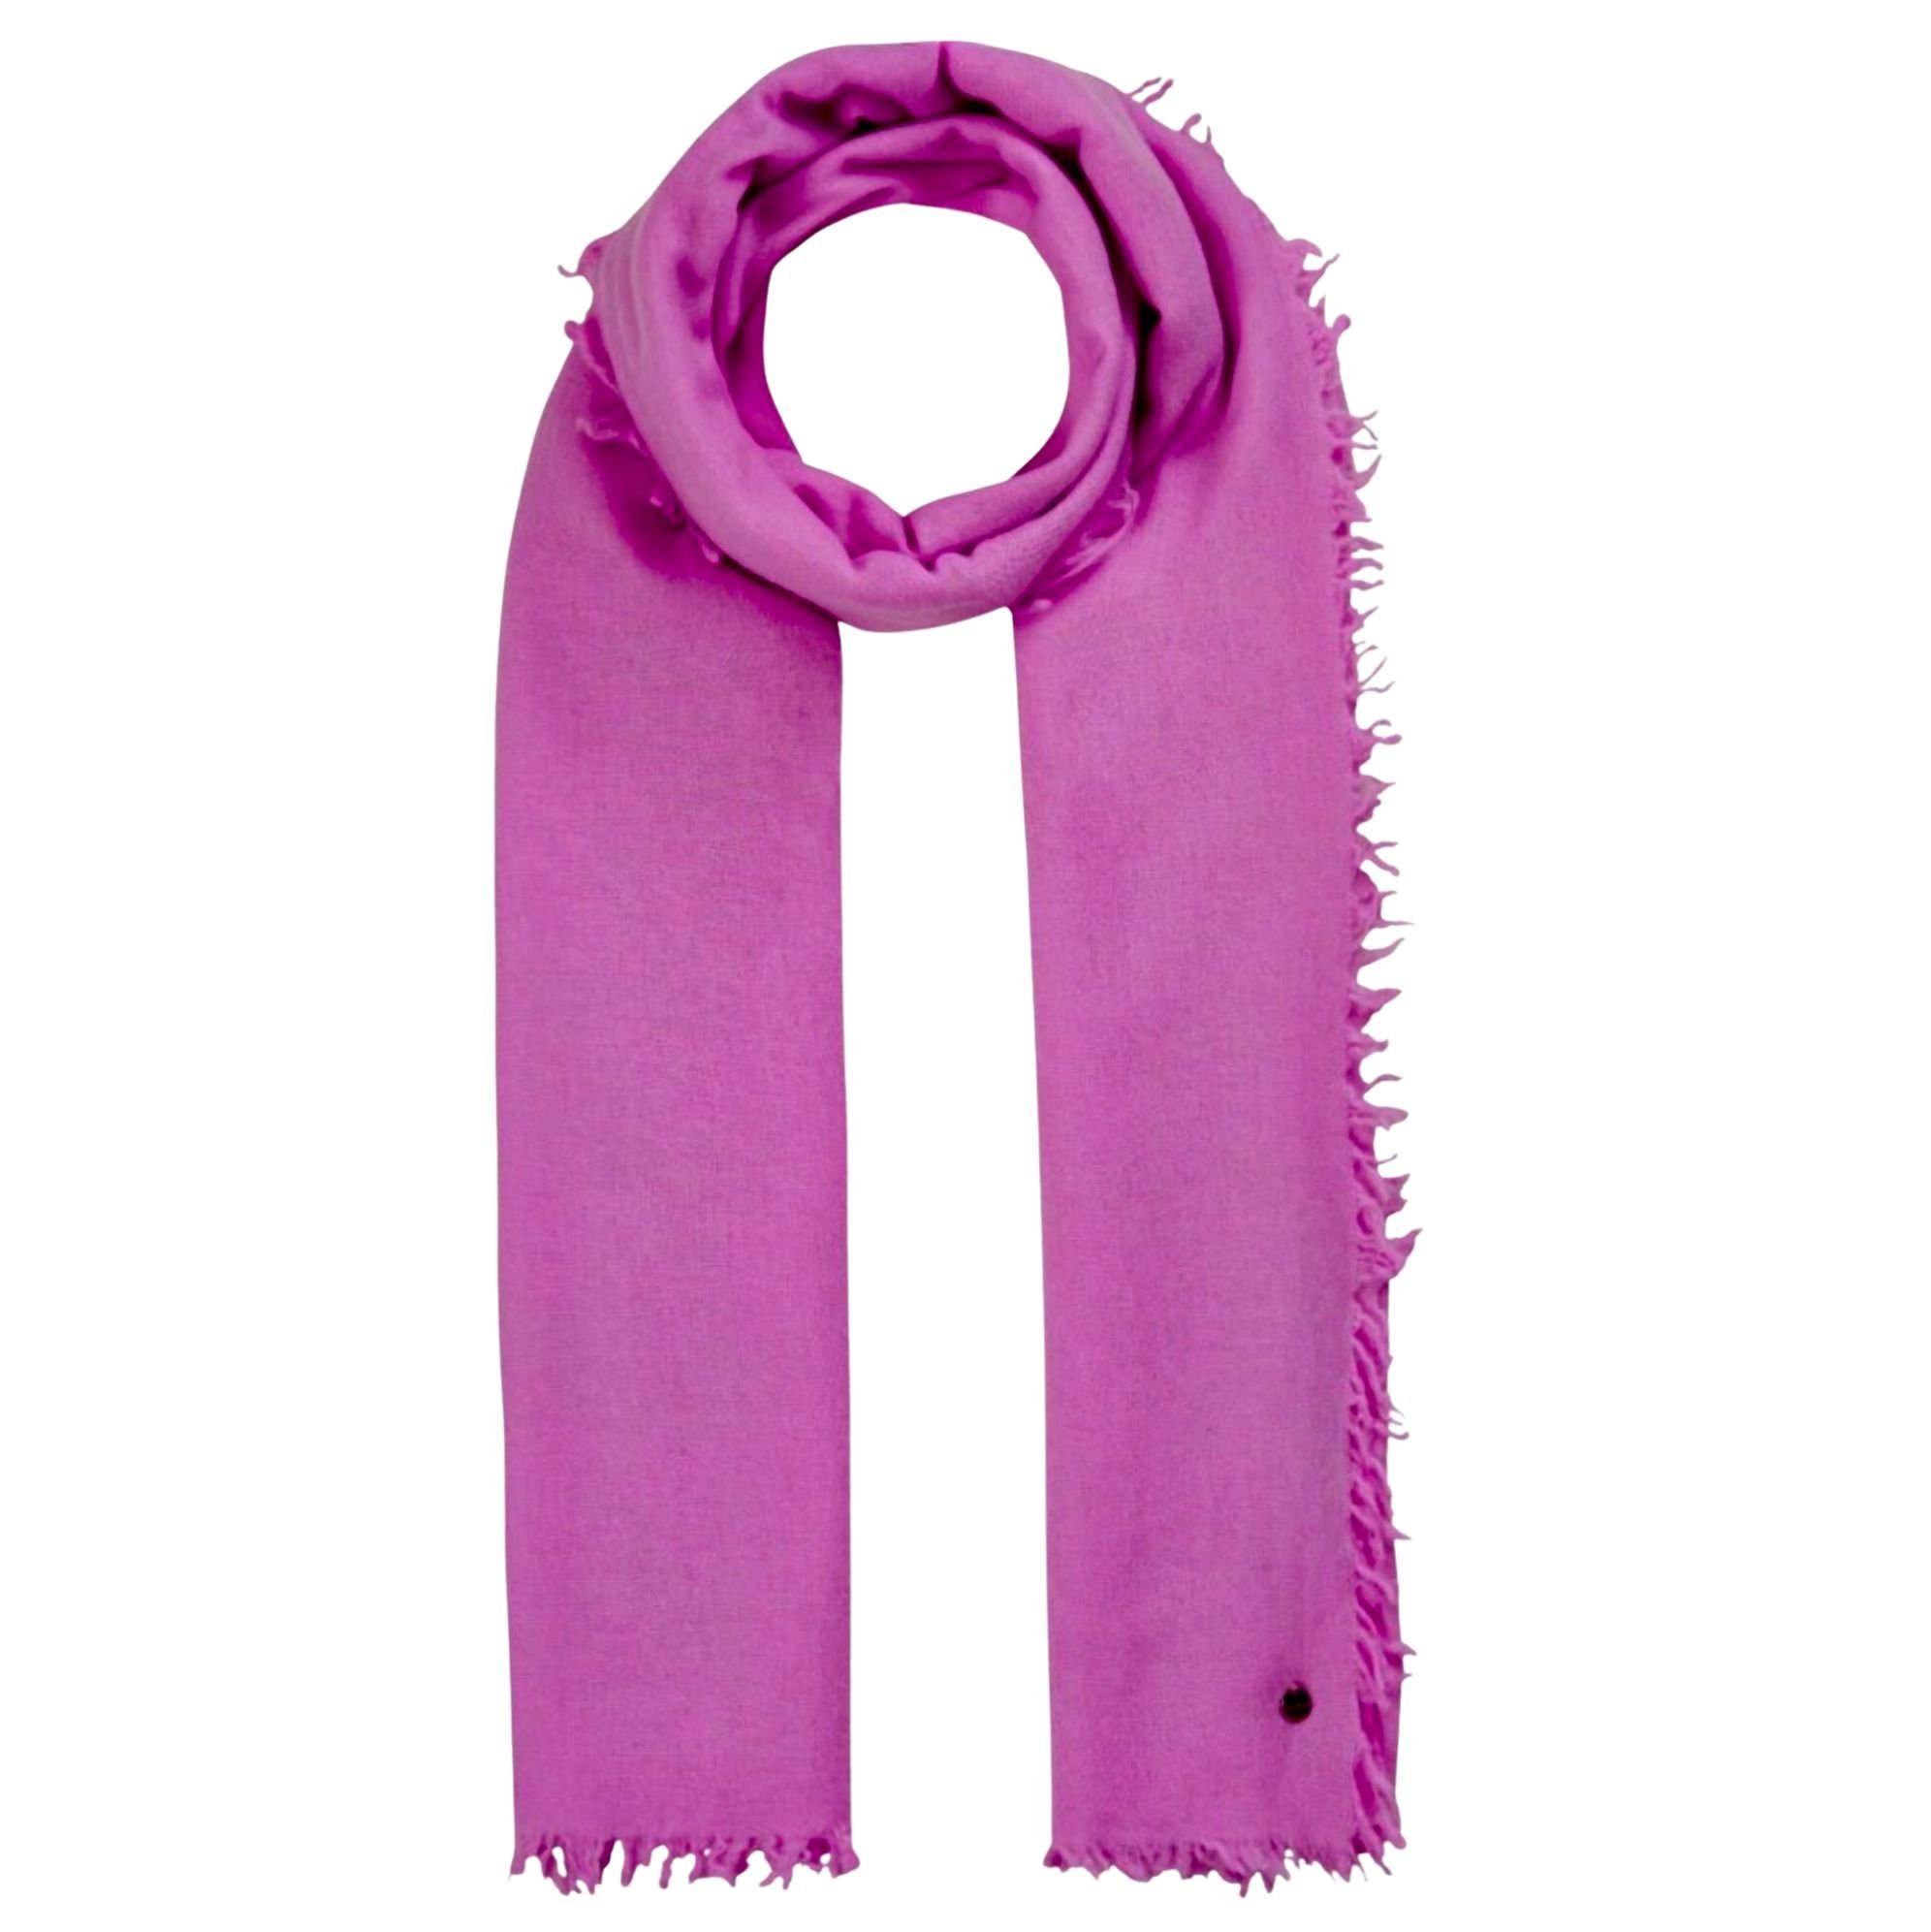 Codello kaschmirweicher Schal oder in pink Codello Modeschal grau